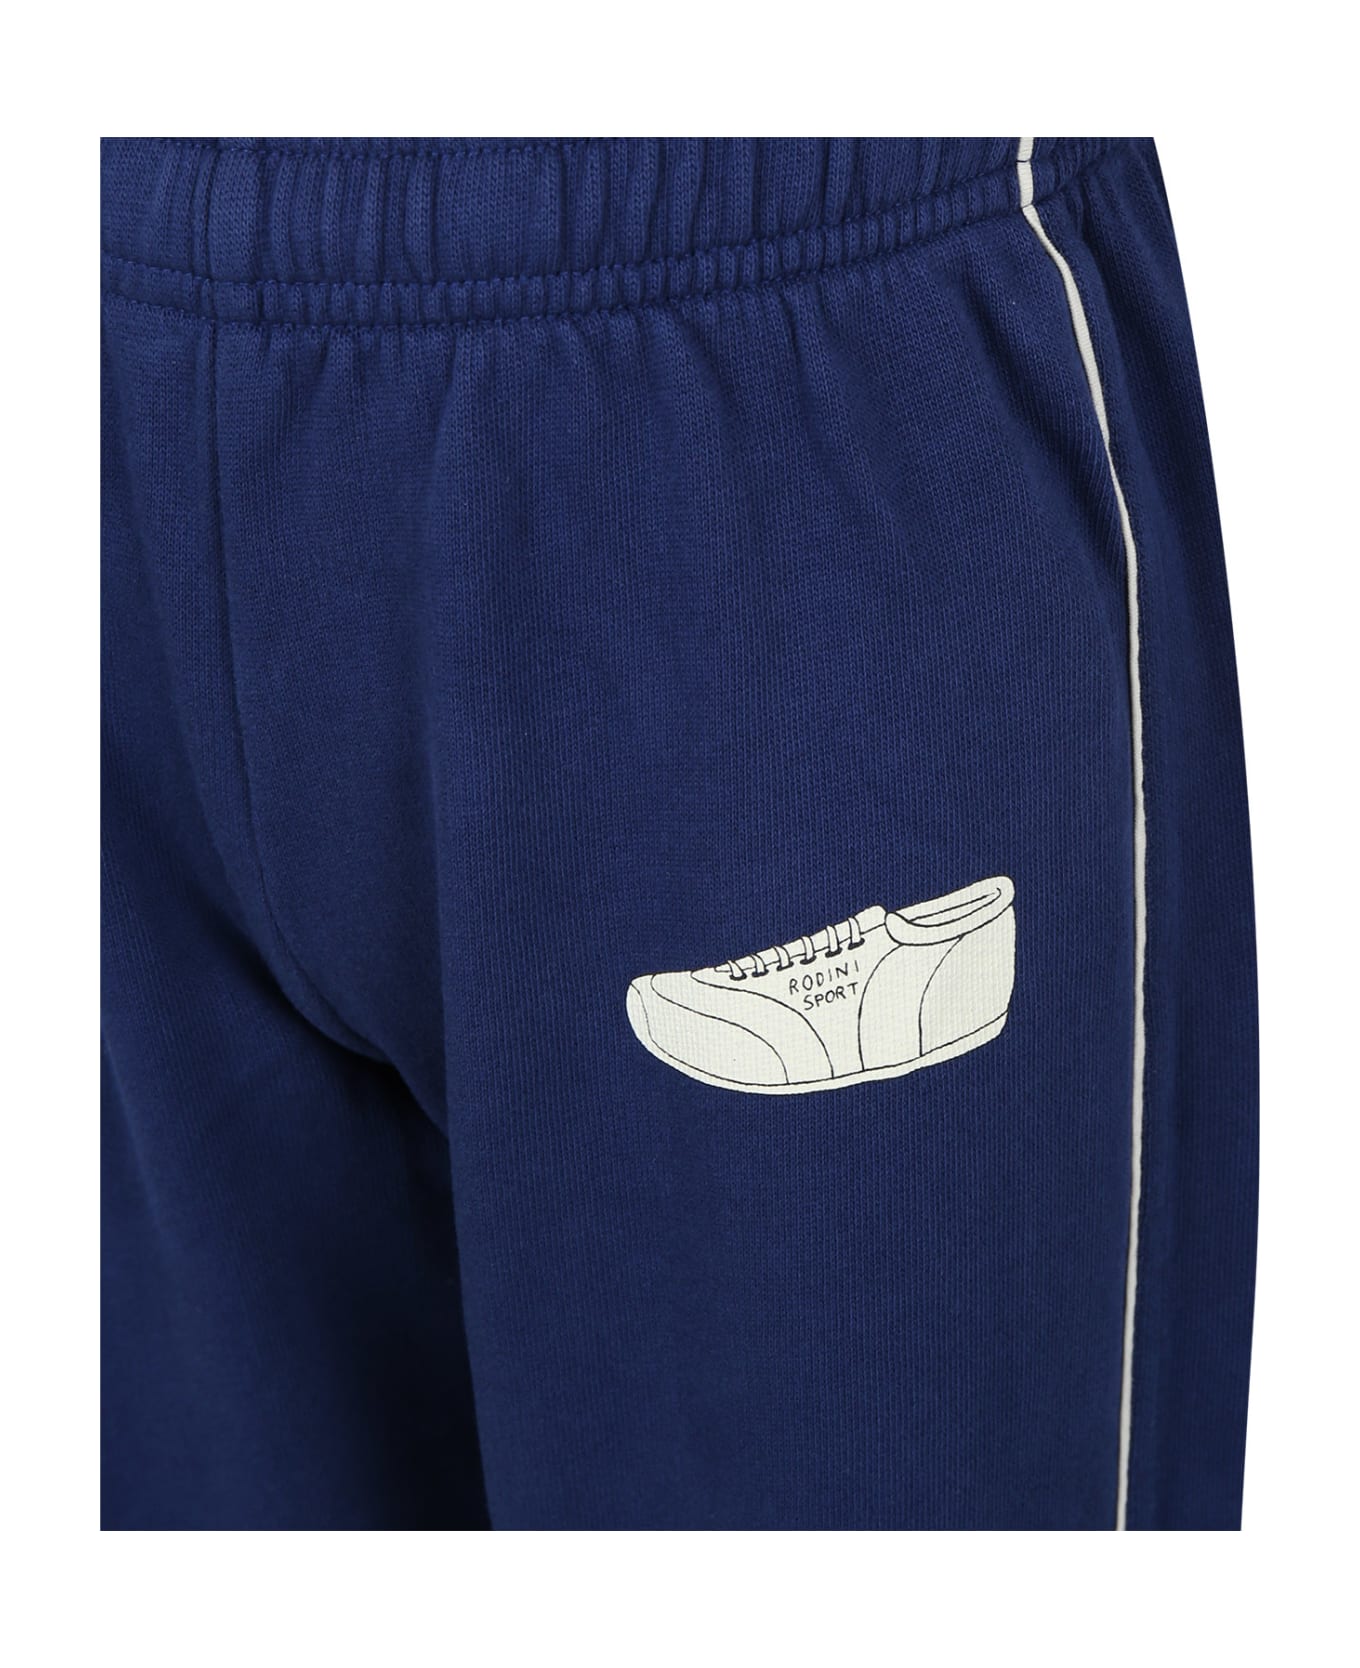 Mini Rodini Blue Sports Trousers For Kids - Blue